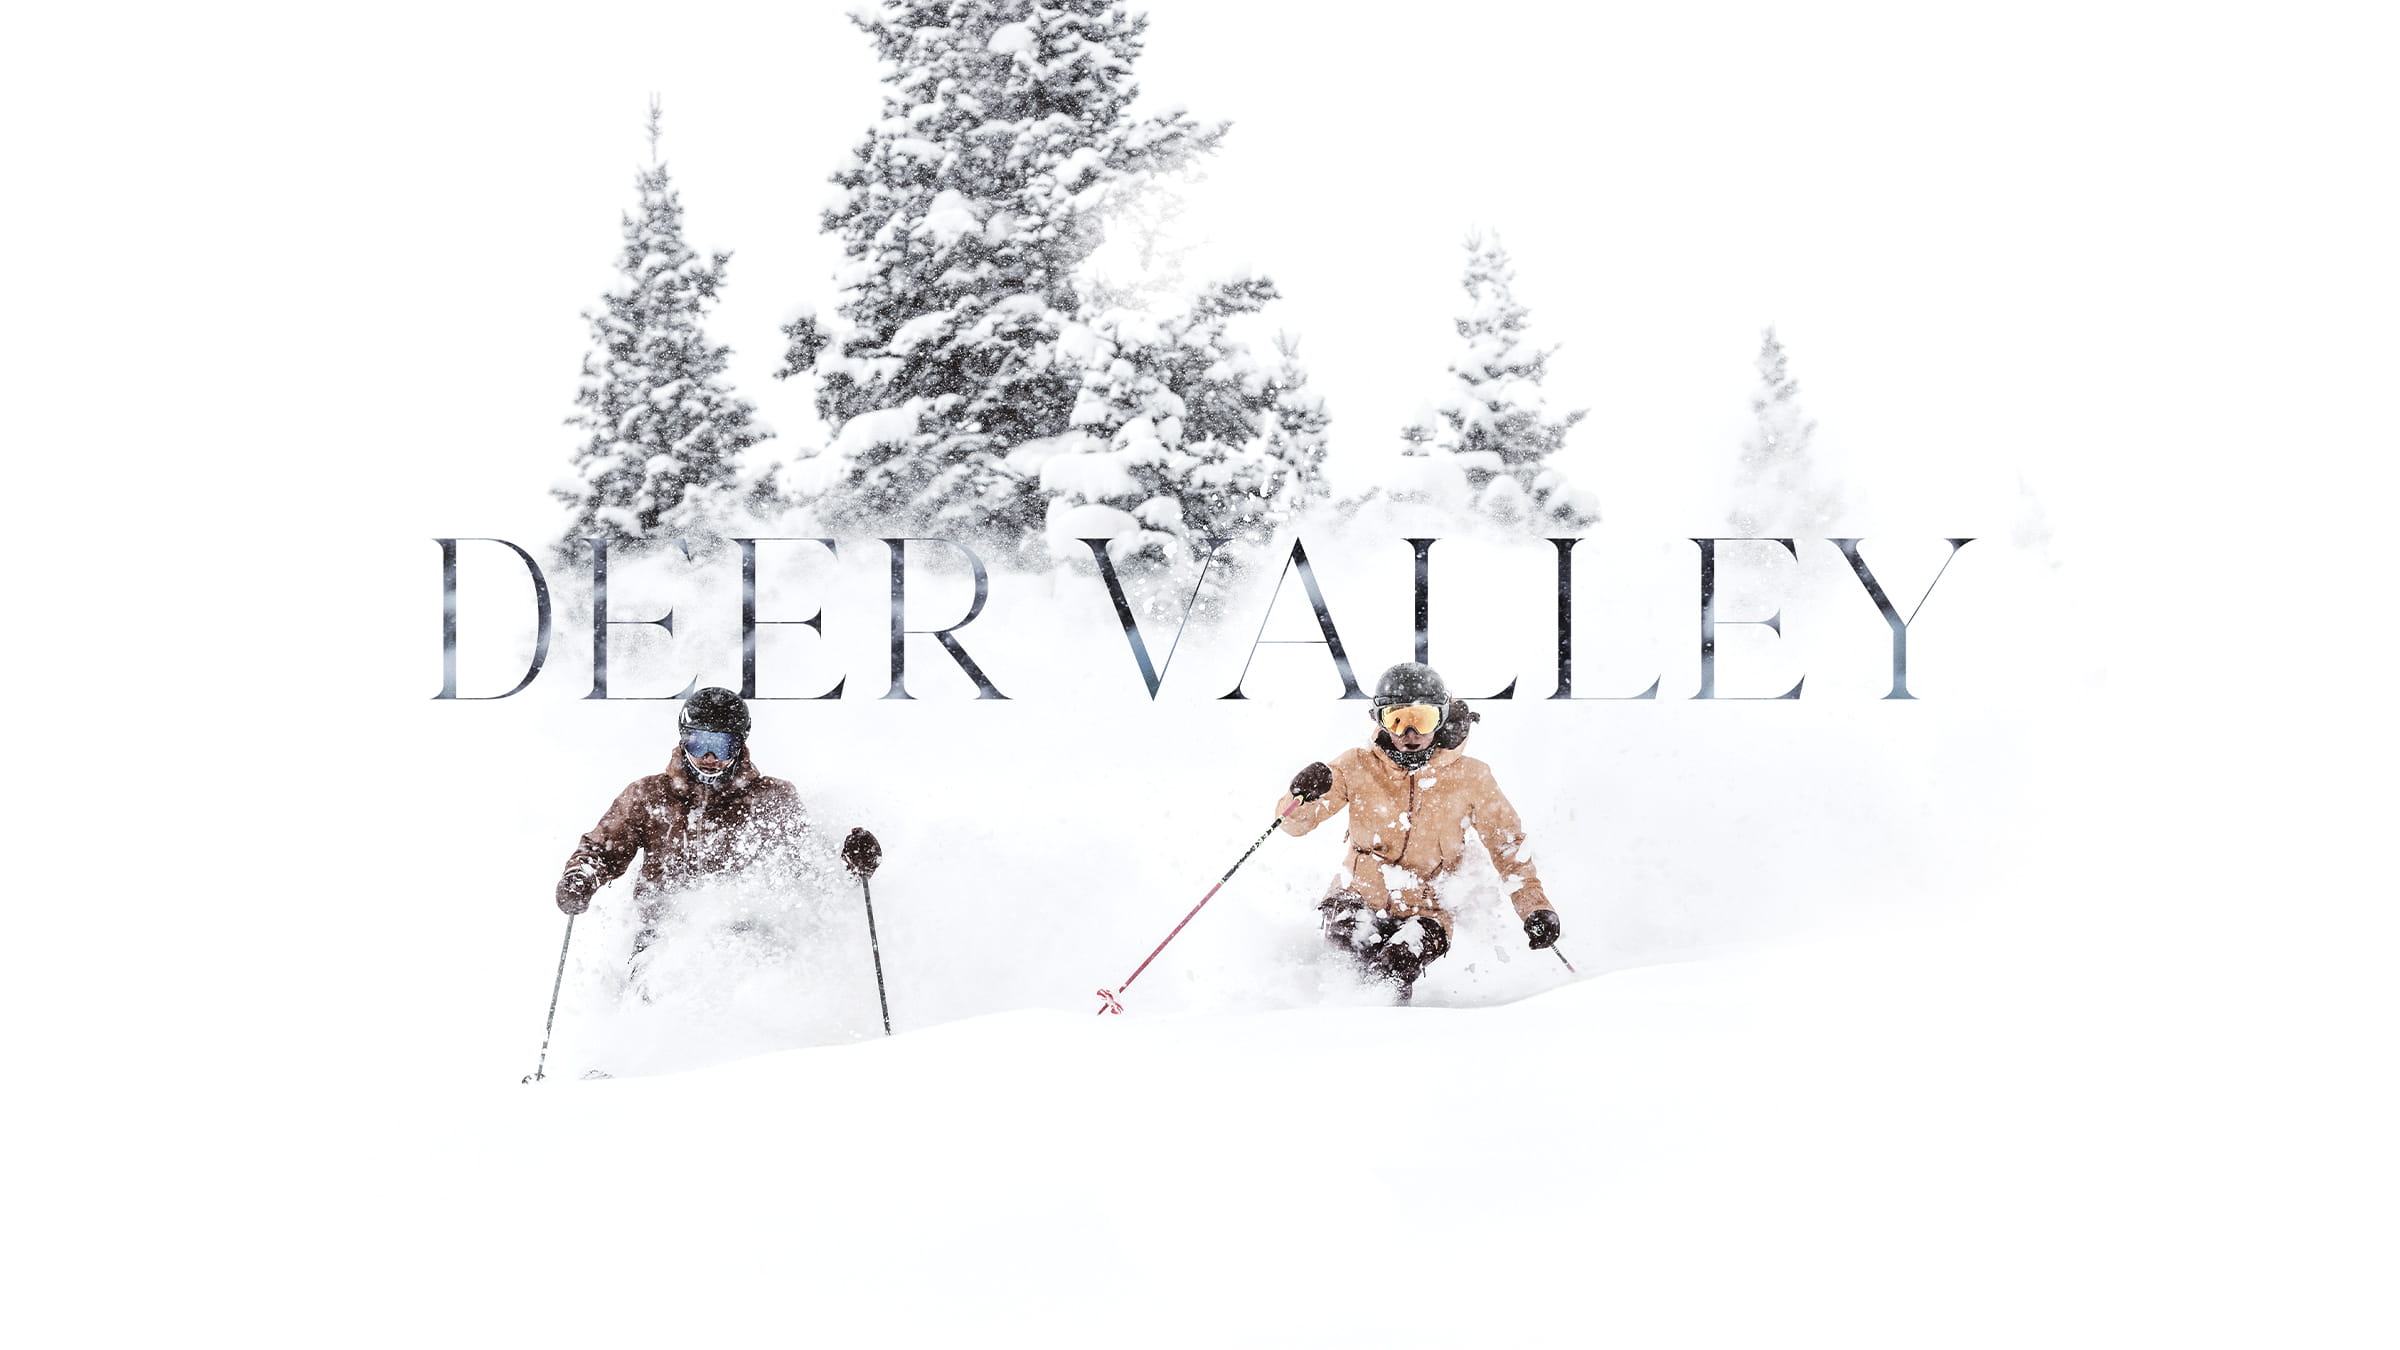 Skiers skiing in powder at Deer Valley Resort